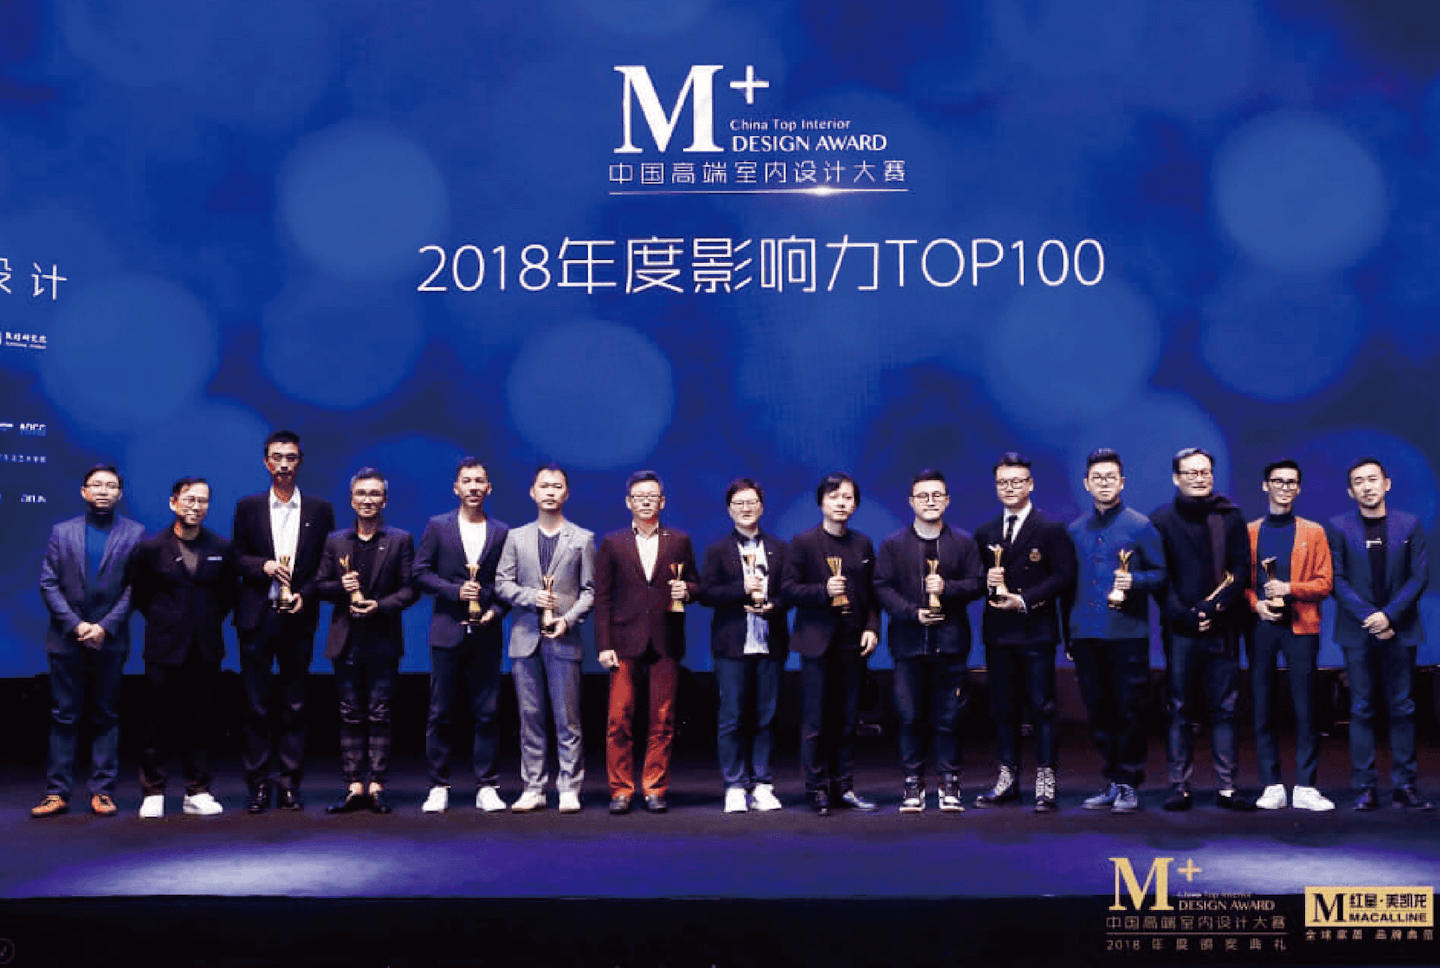 頒獎快訊 | M+中國高端室內設計大賽 
2018年度影響力TOP100